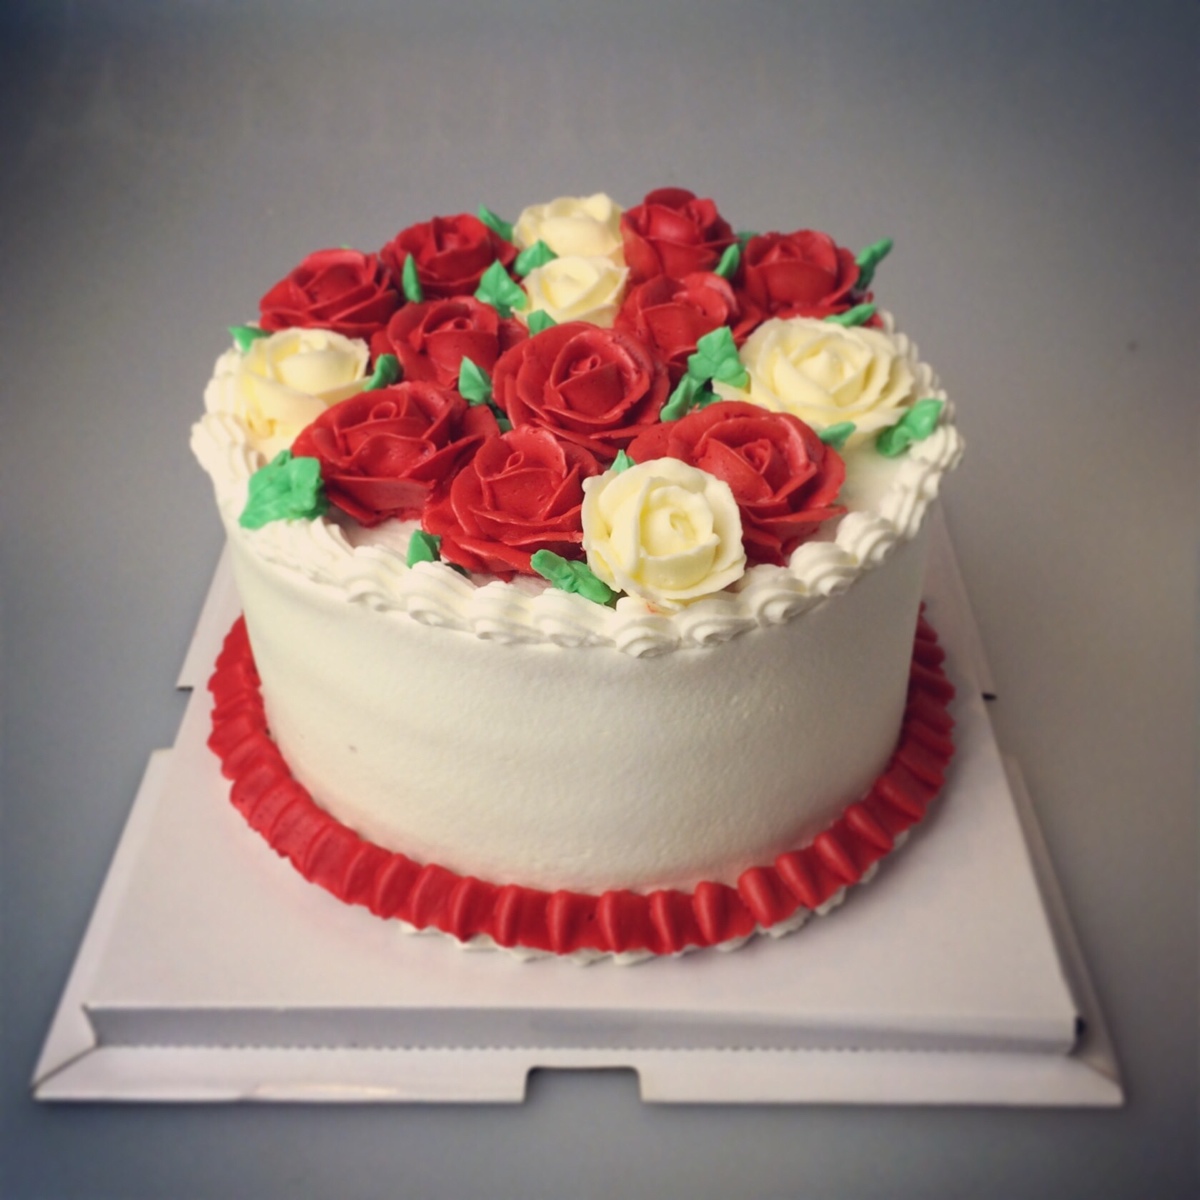 花样蛋糕系列3 红玫瑰与白玫瑰